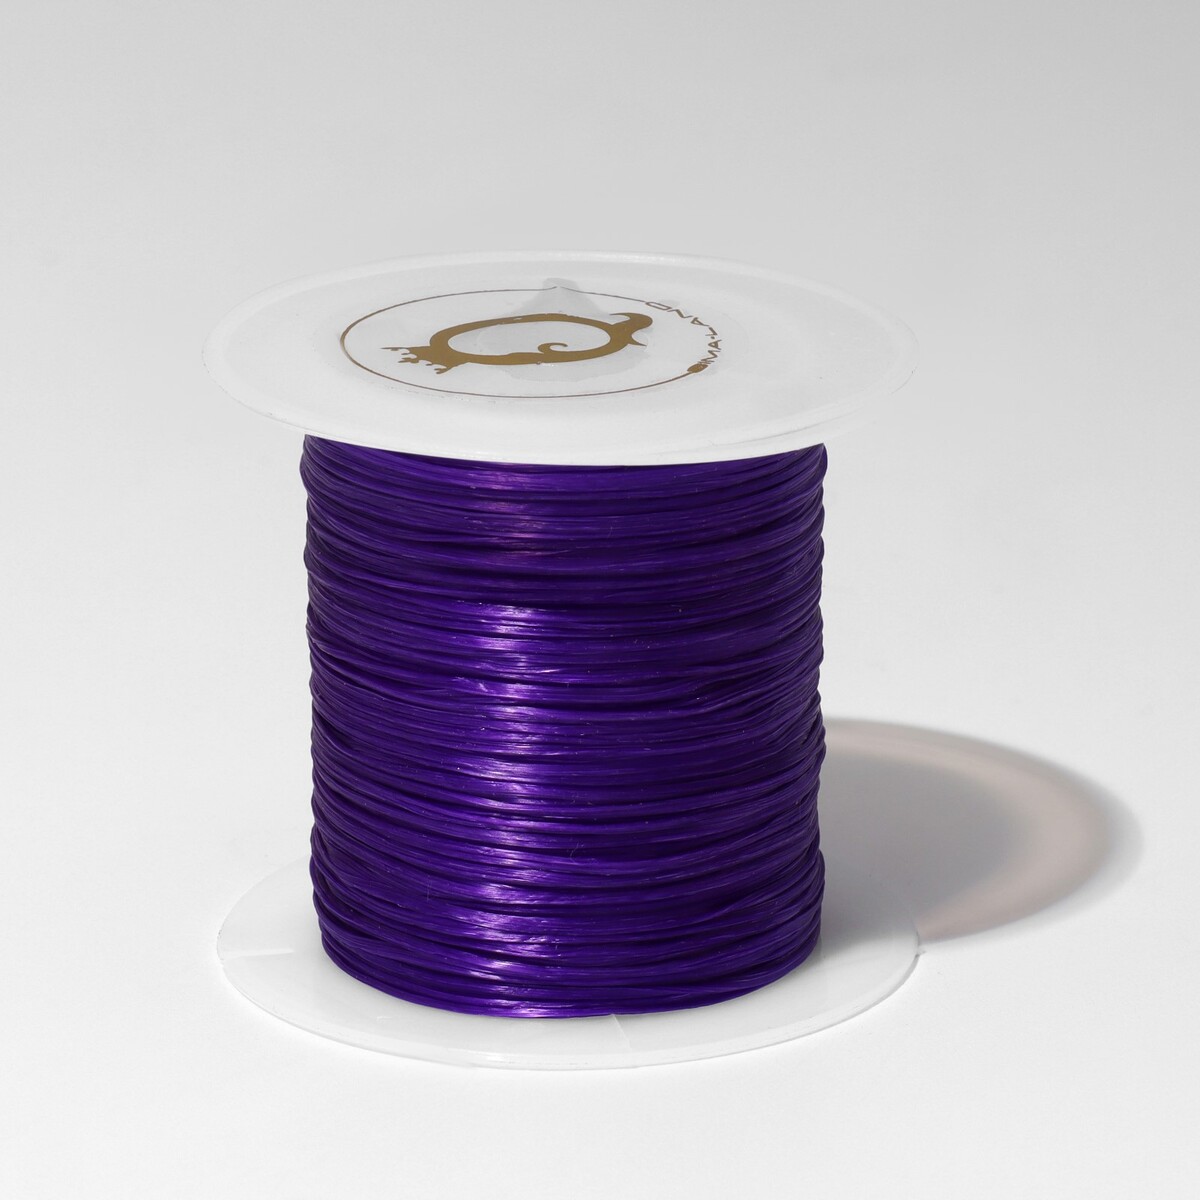 Нить силиконовая (резинка) d=0.5мм, l=10м (прочность 2250 денье), цвет фиолетовый Queen fair